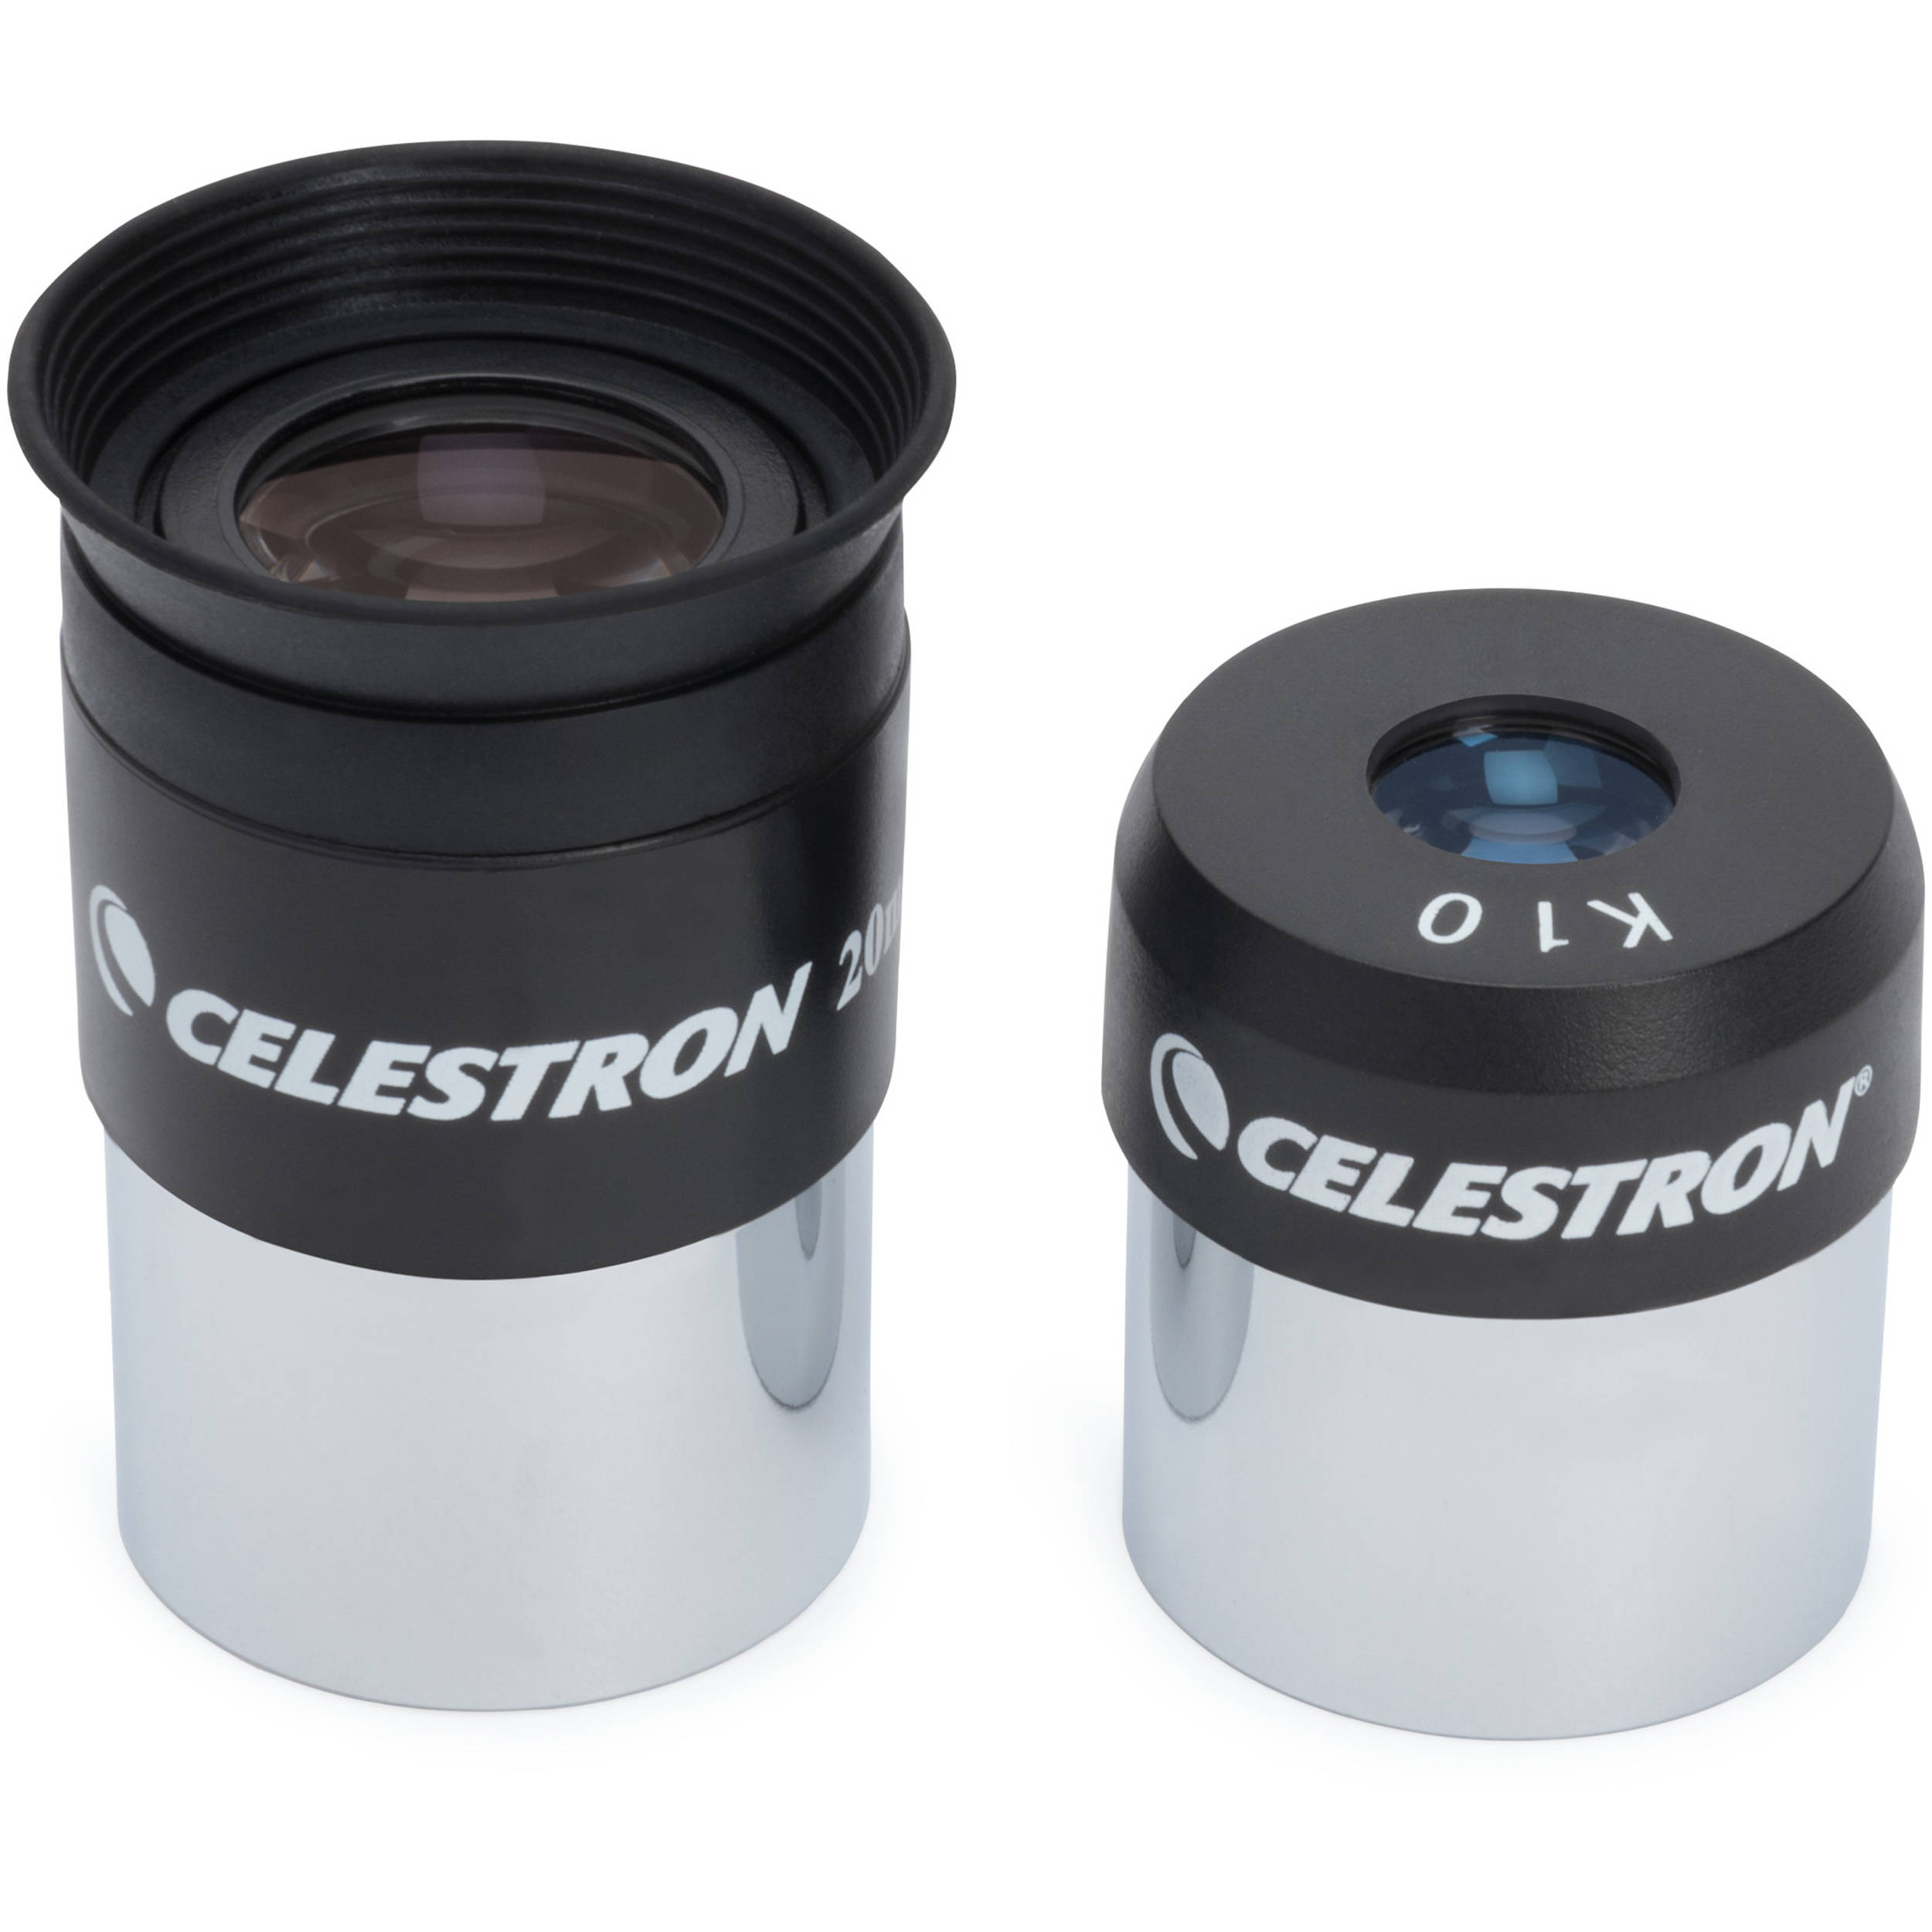 celestron cometron firstscope telescope